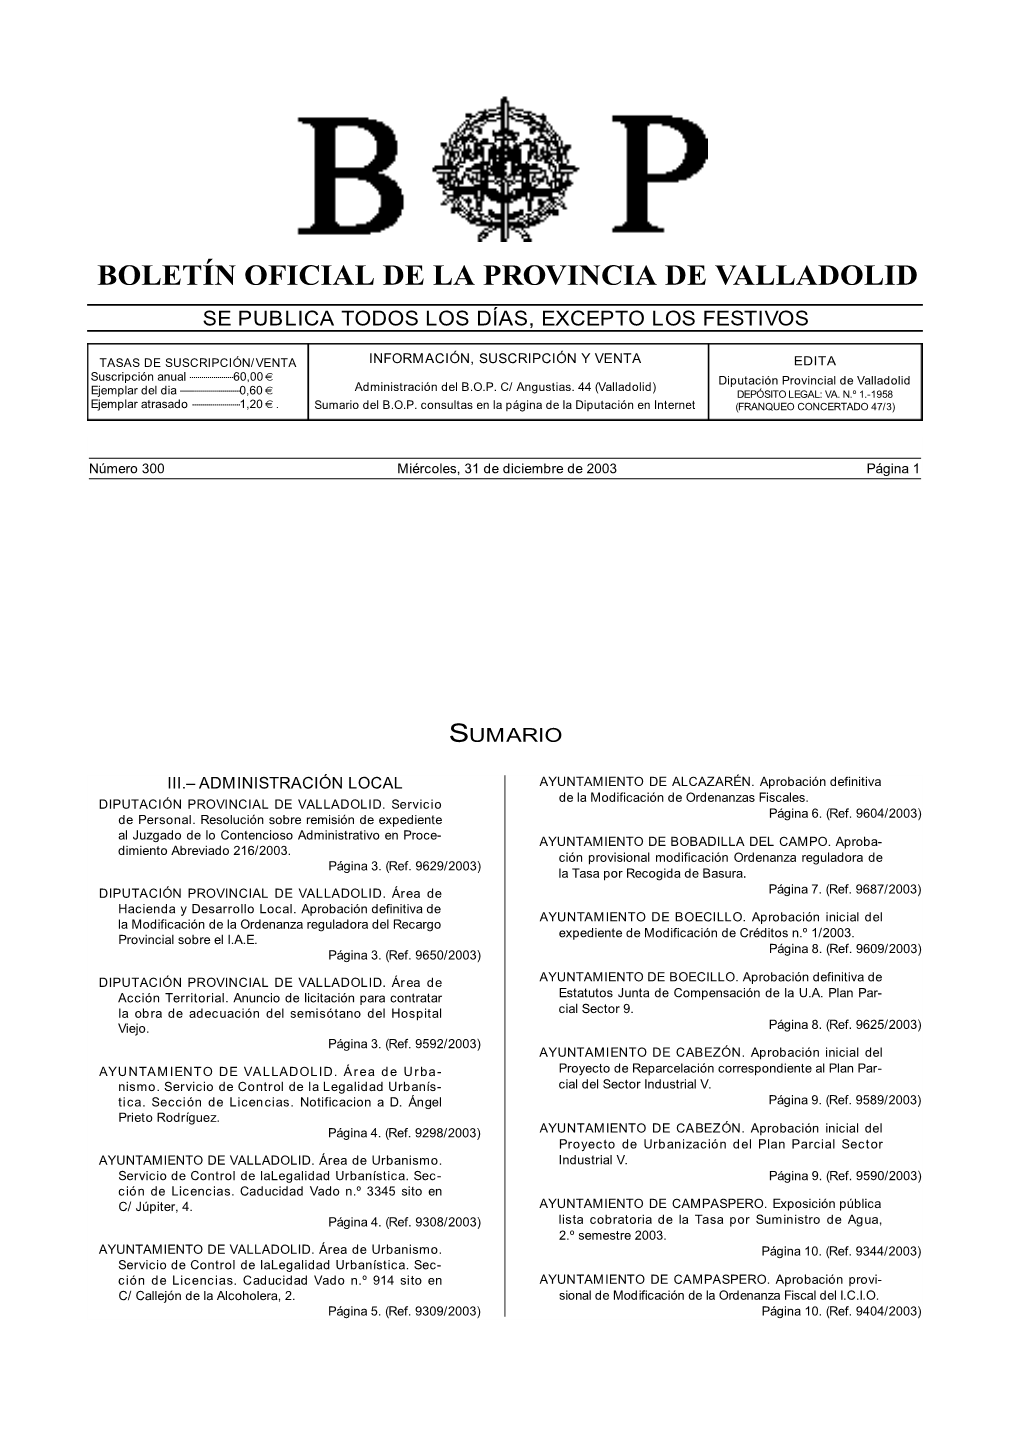 Boletín Oficial De La Provincia De Contra El Decreto De La Presidencia N.º 4476 De 1 De Octubre De V a L L a D O L I D